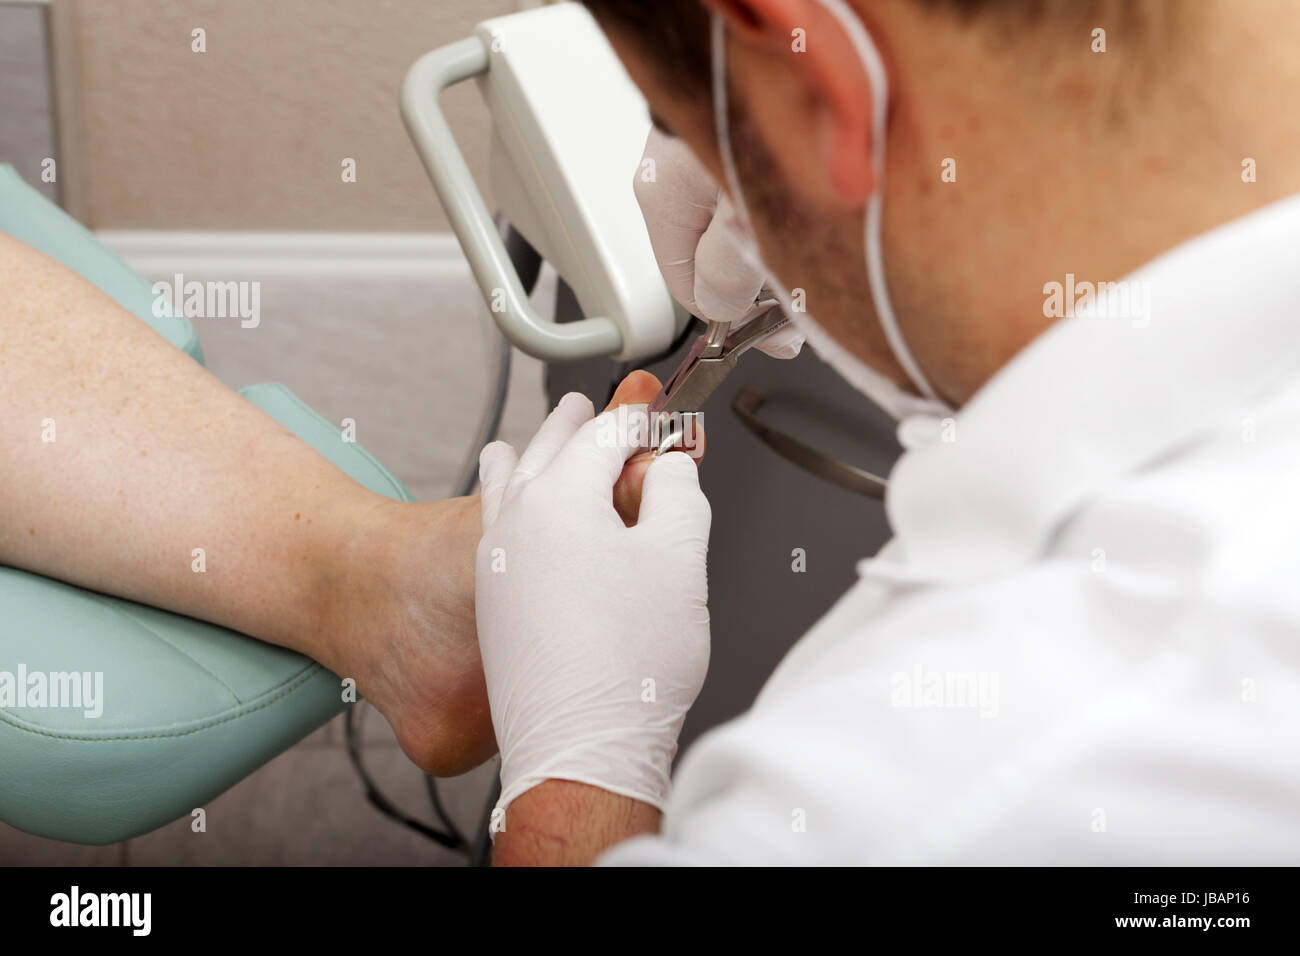 Fußpfleger schneidet mit Zange Zehennägel Stock Photo